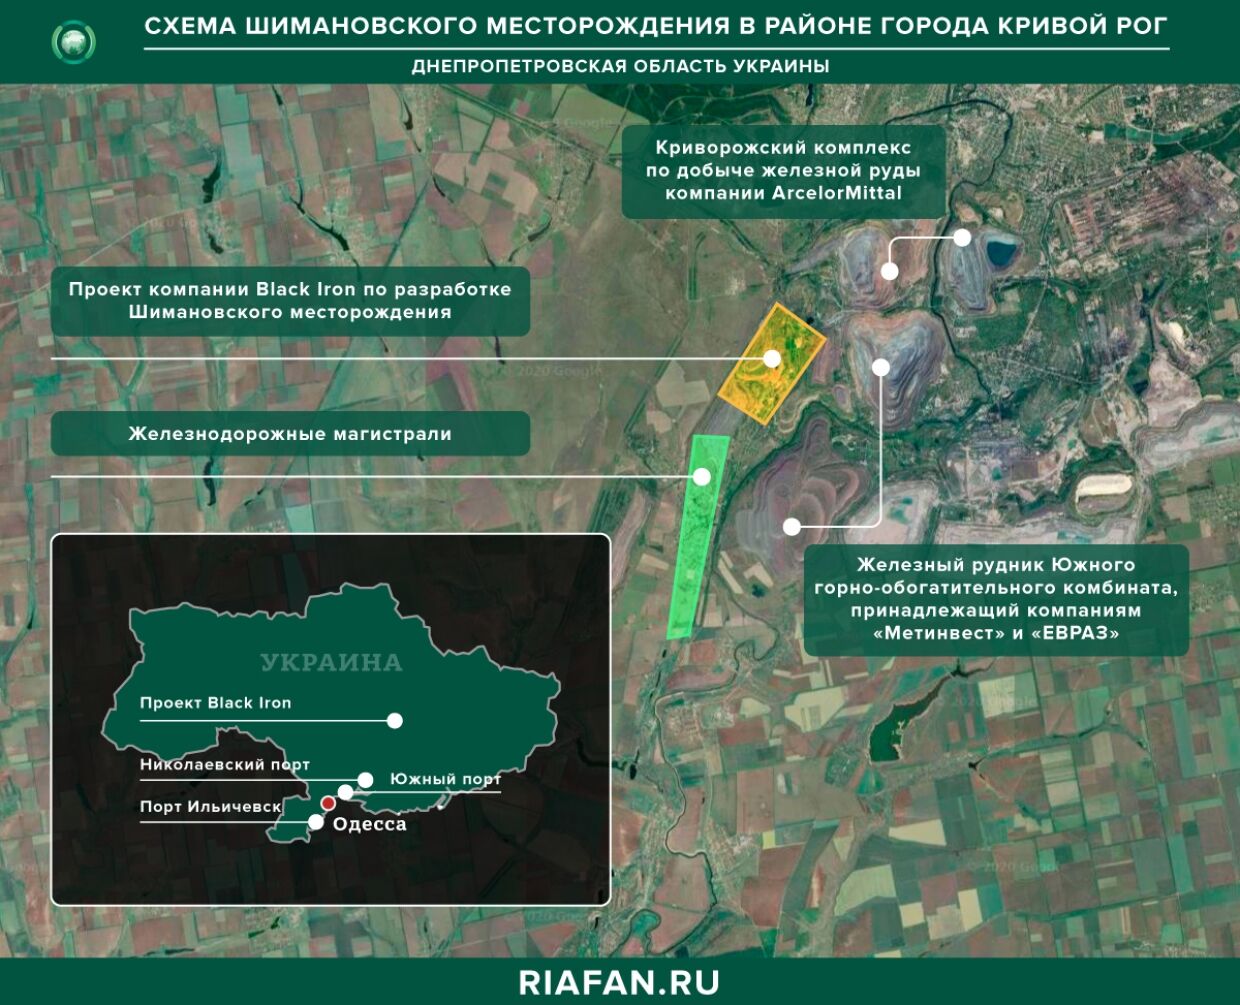 Схема Шимановского месторождения в районе Кривого Рога Днепропетровской области 